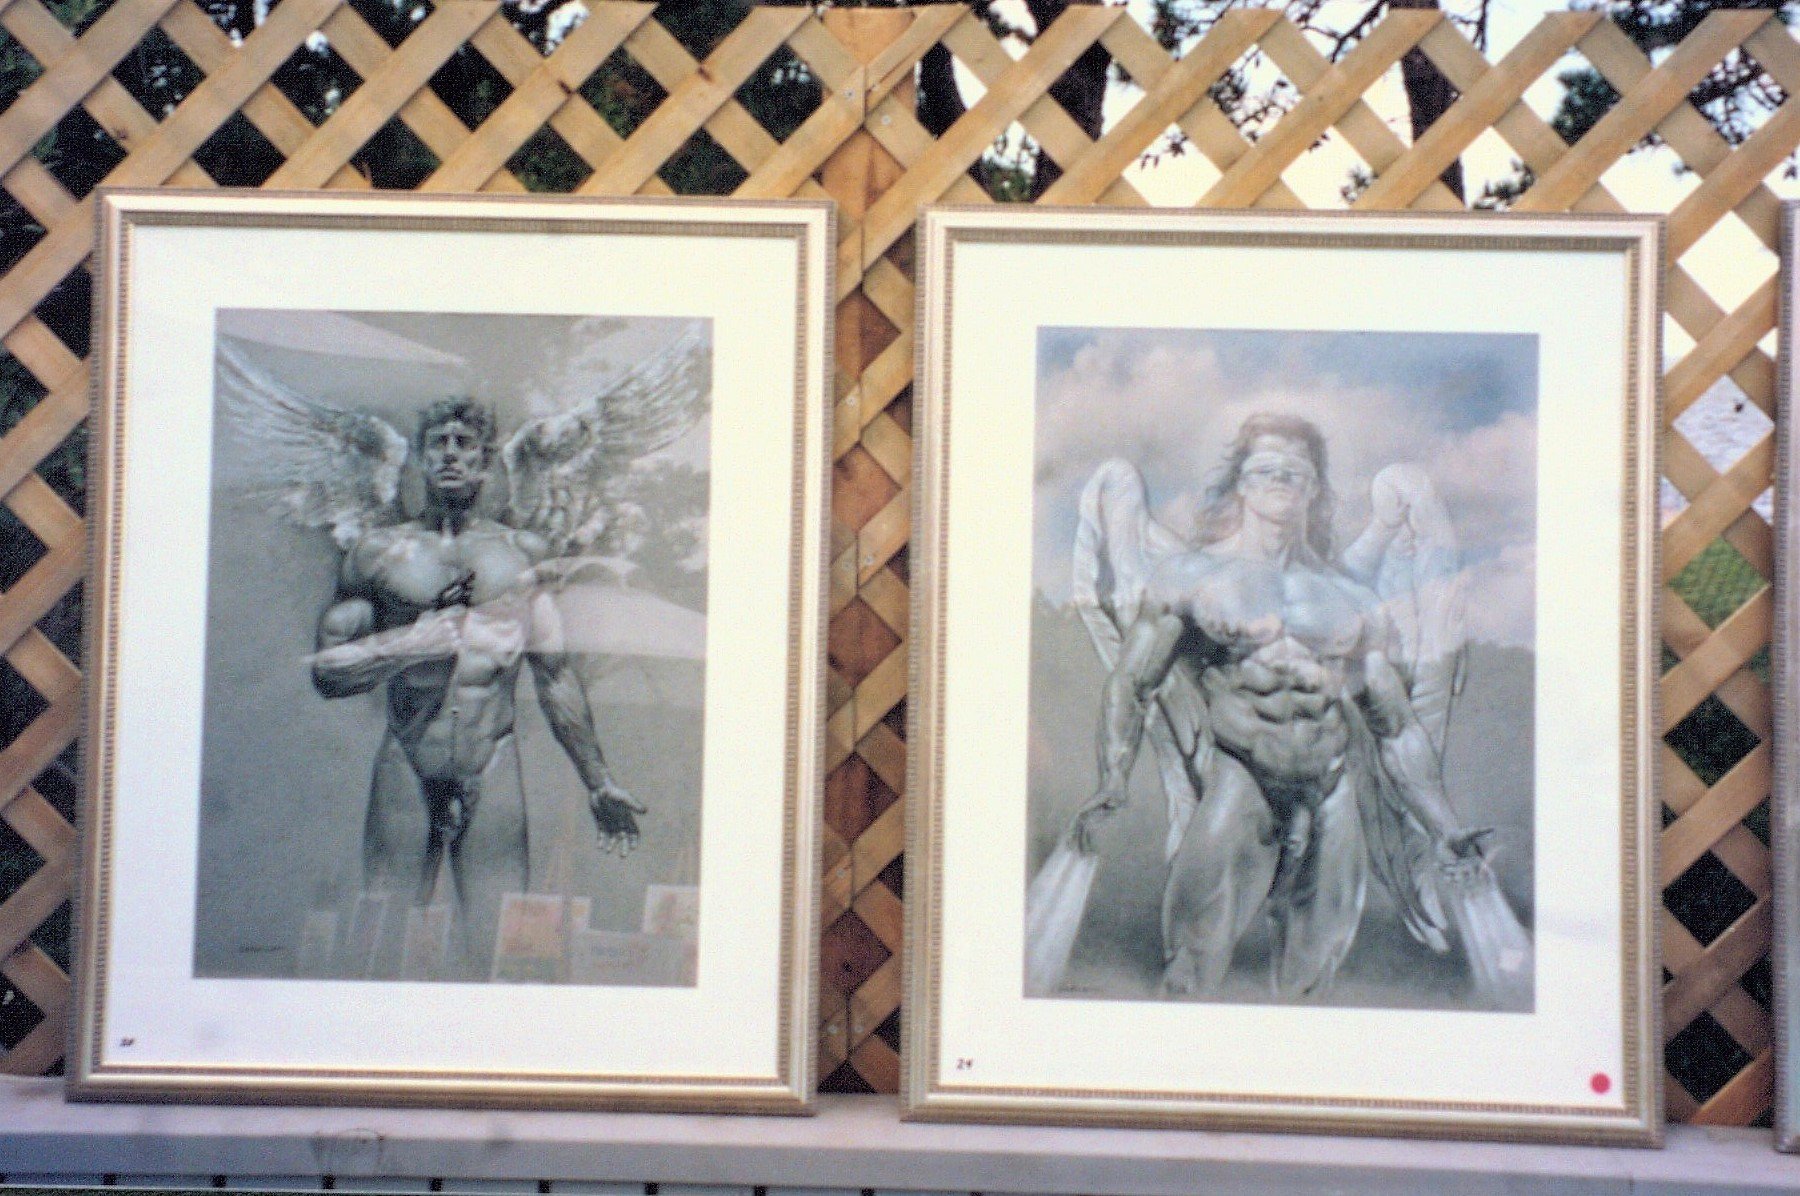 1993 Art Show art 4.jpg